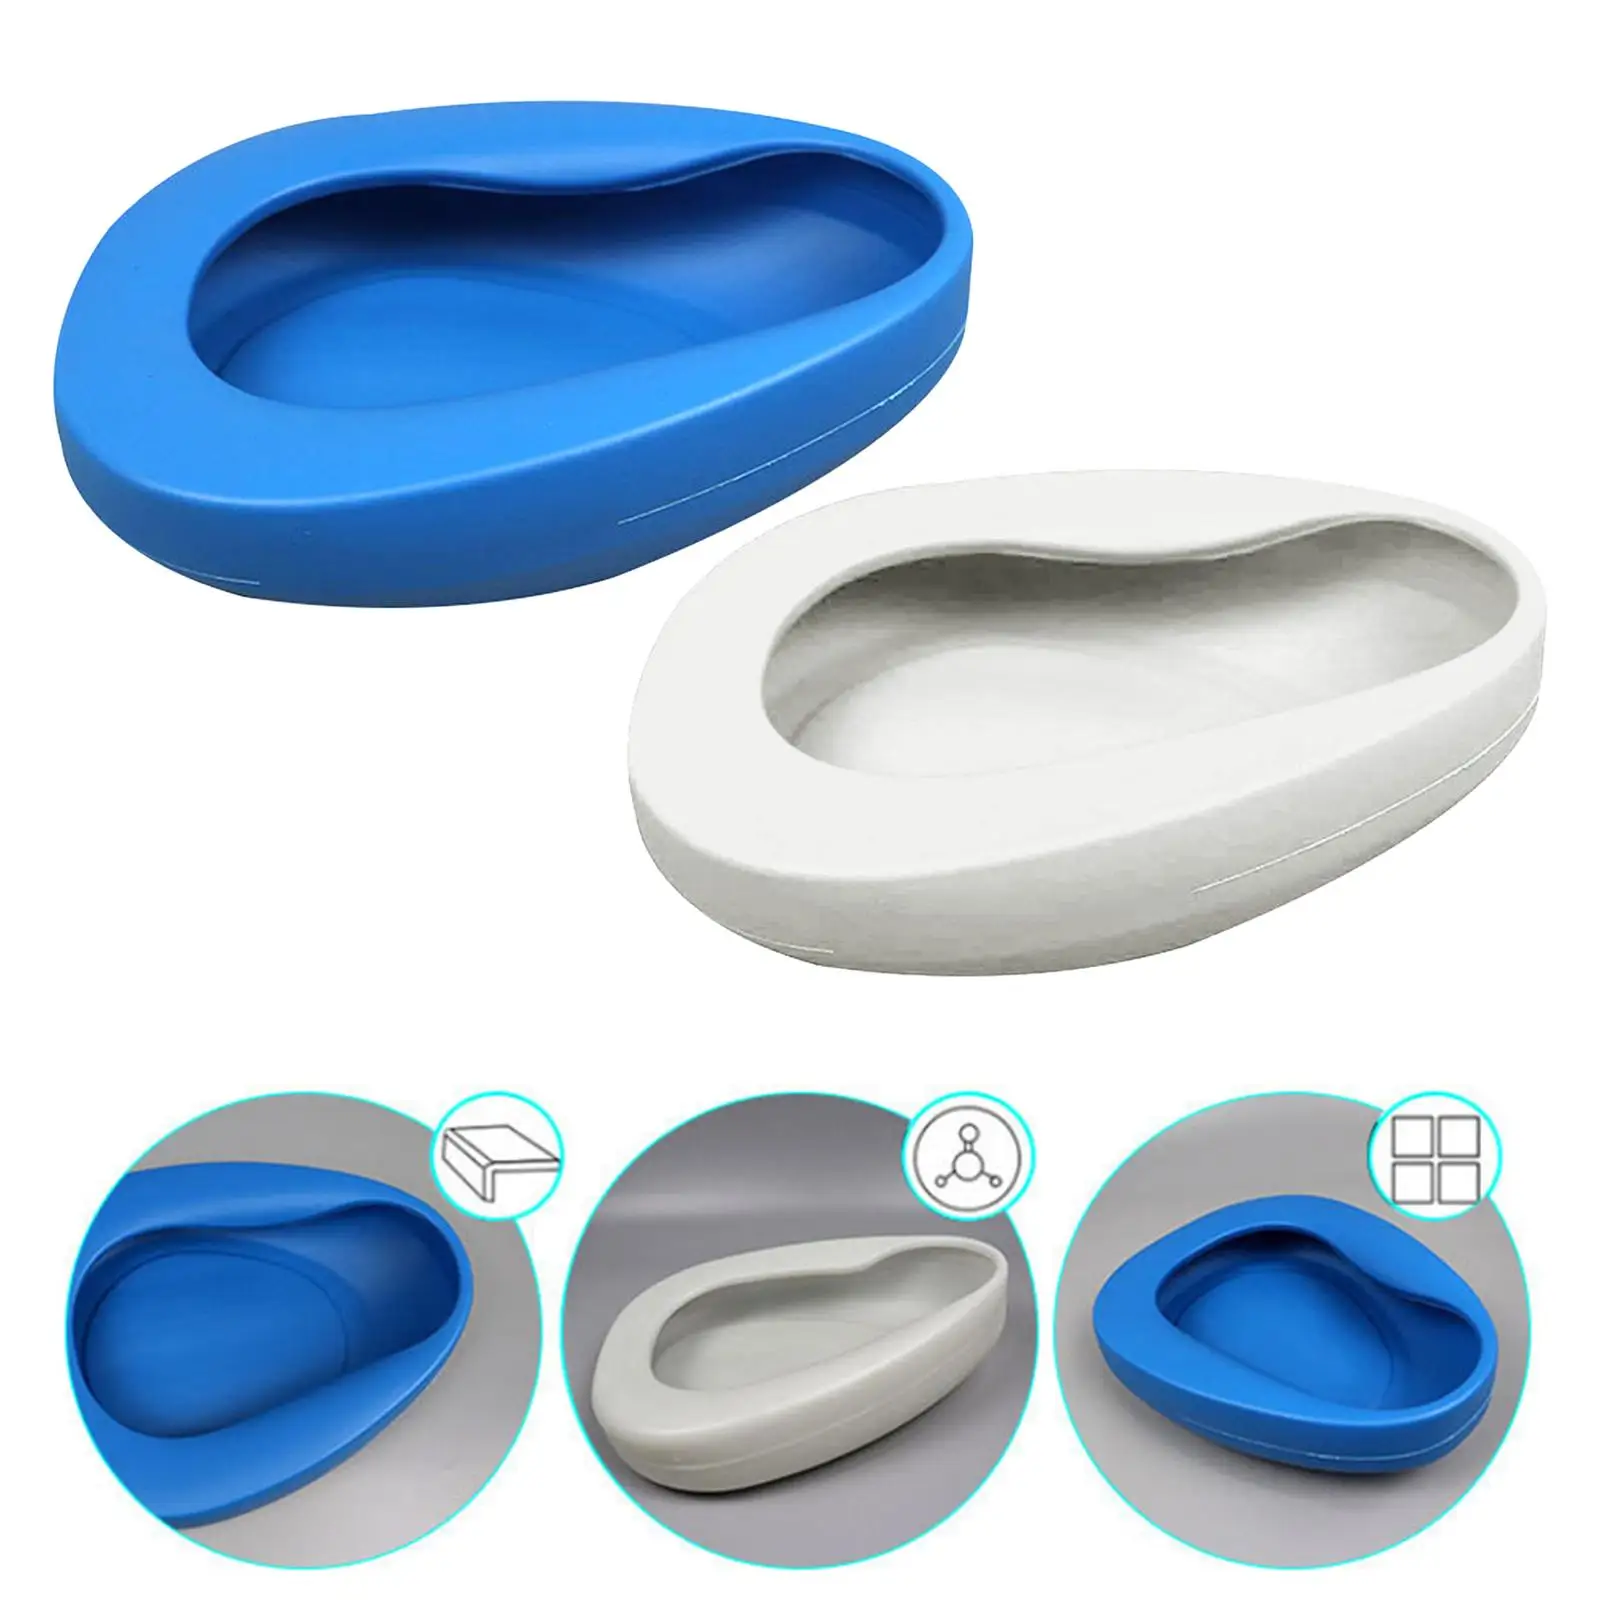 Portable Bedpan Heavy Duty Reusable Lightweight Durable Thicken Plastic Stable Bed Pan for Bedridden Patient Elderly Women Men